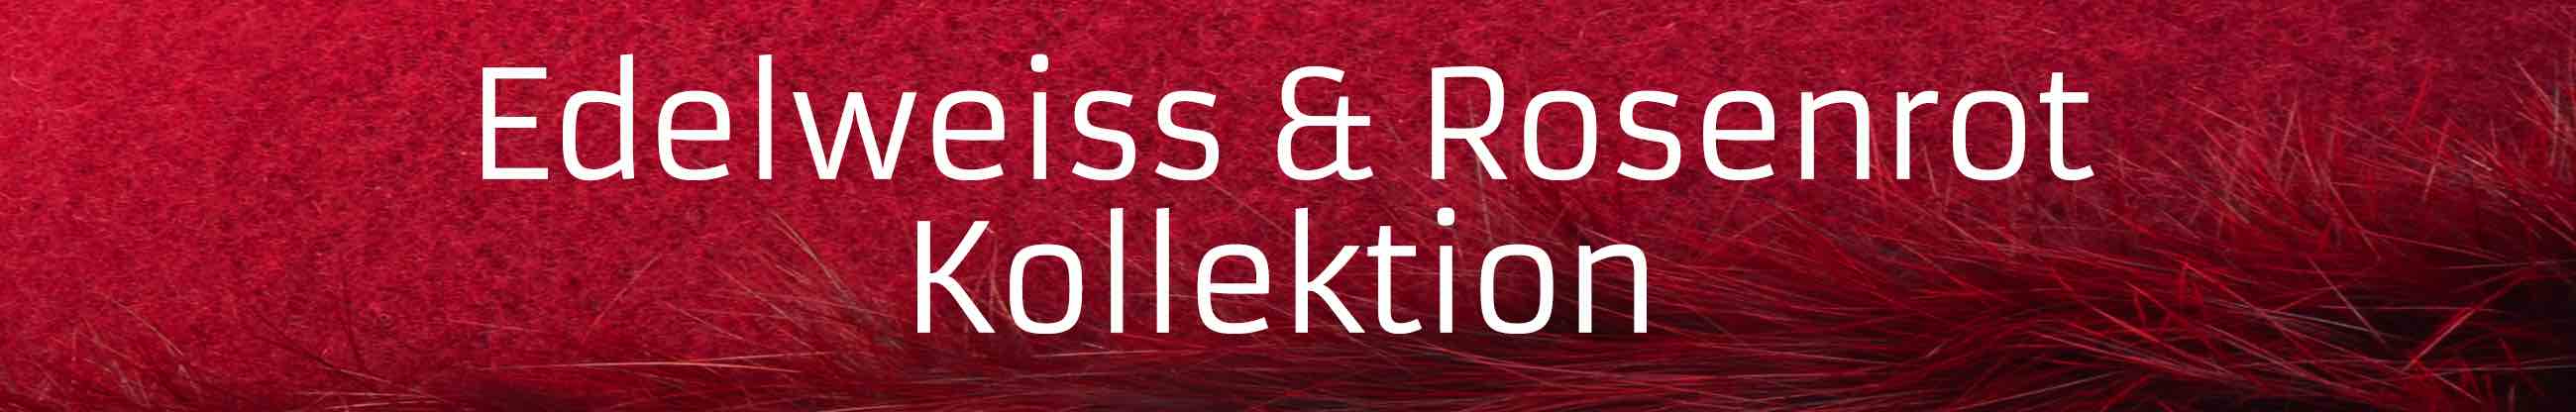 Edelweiss & Rosenrot Kollektion